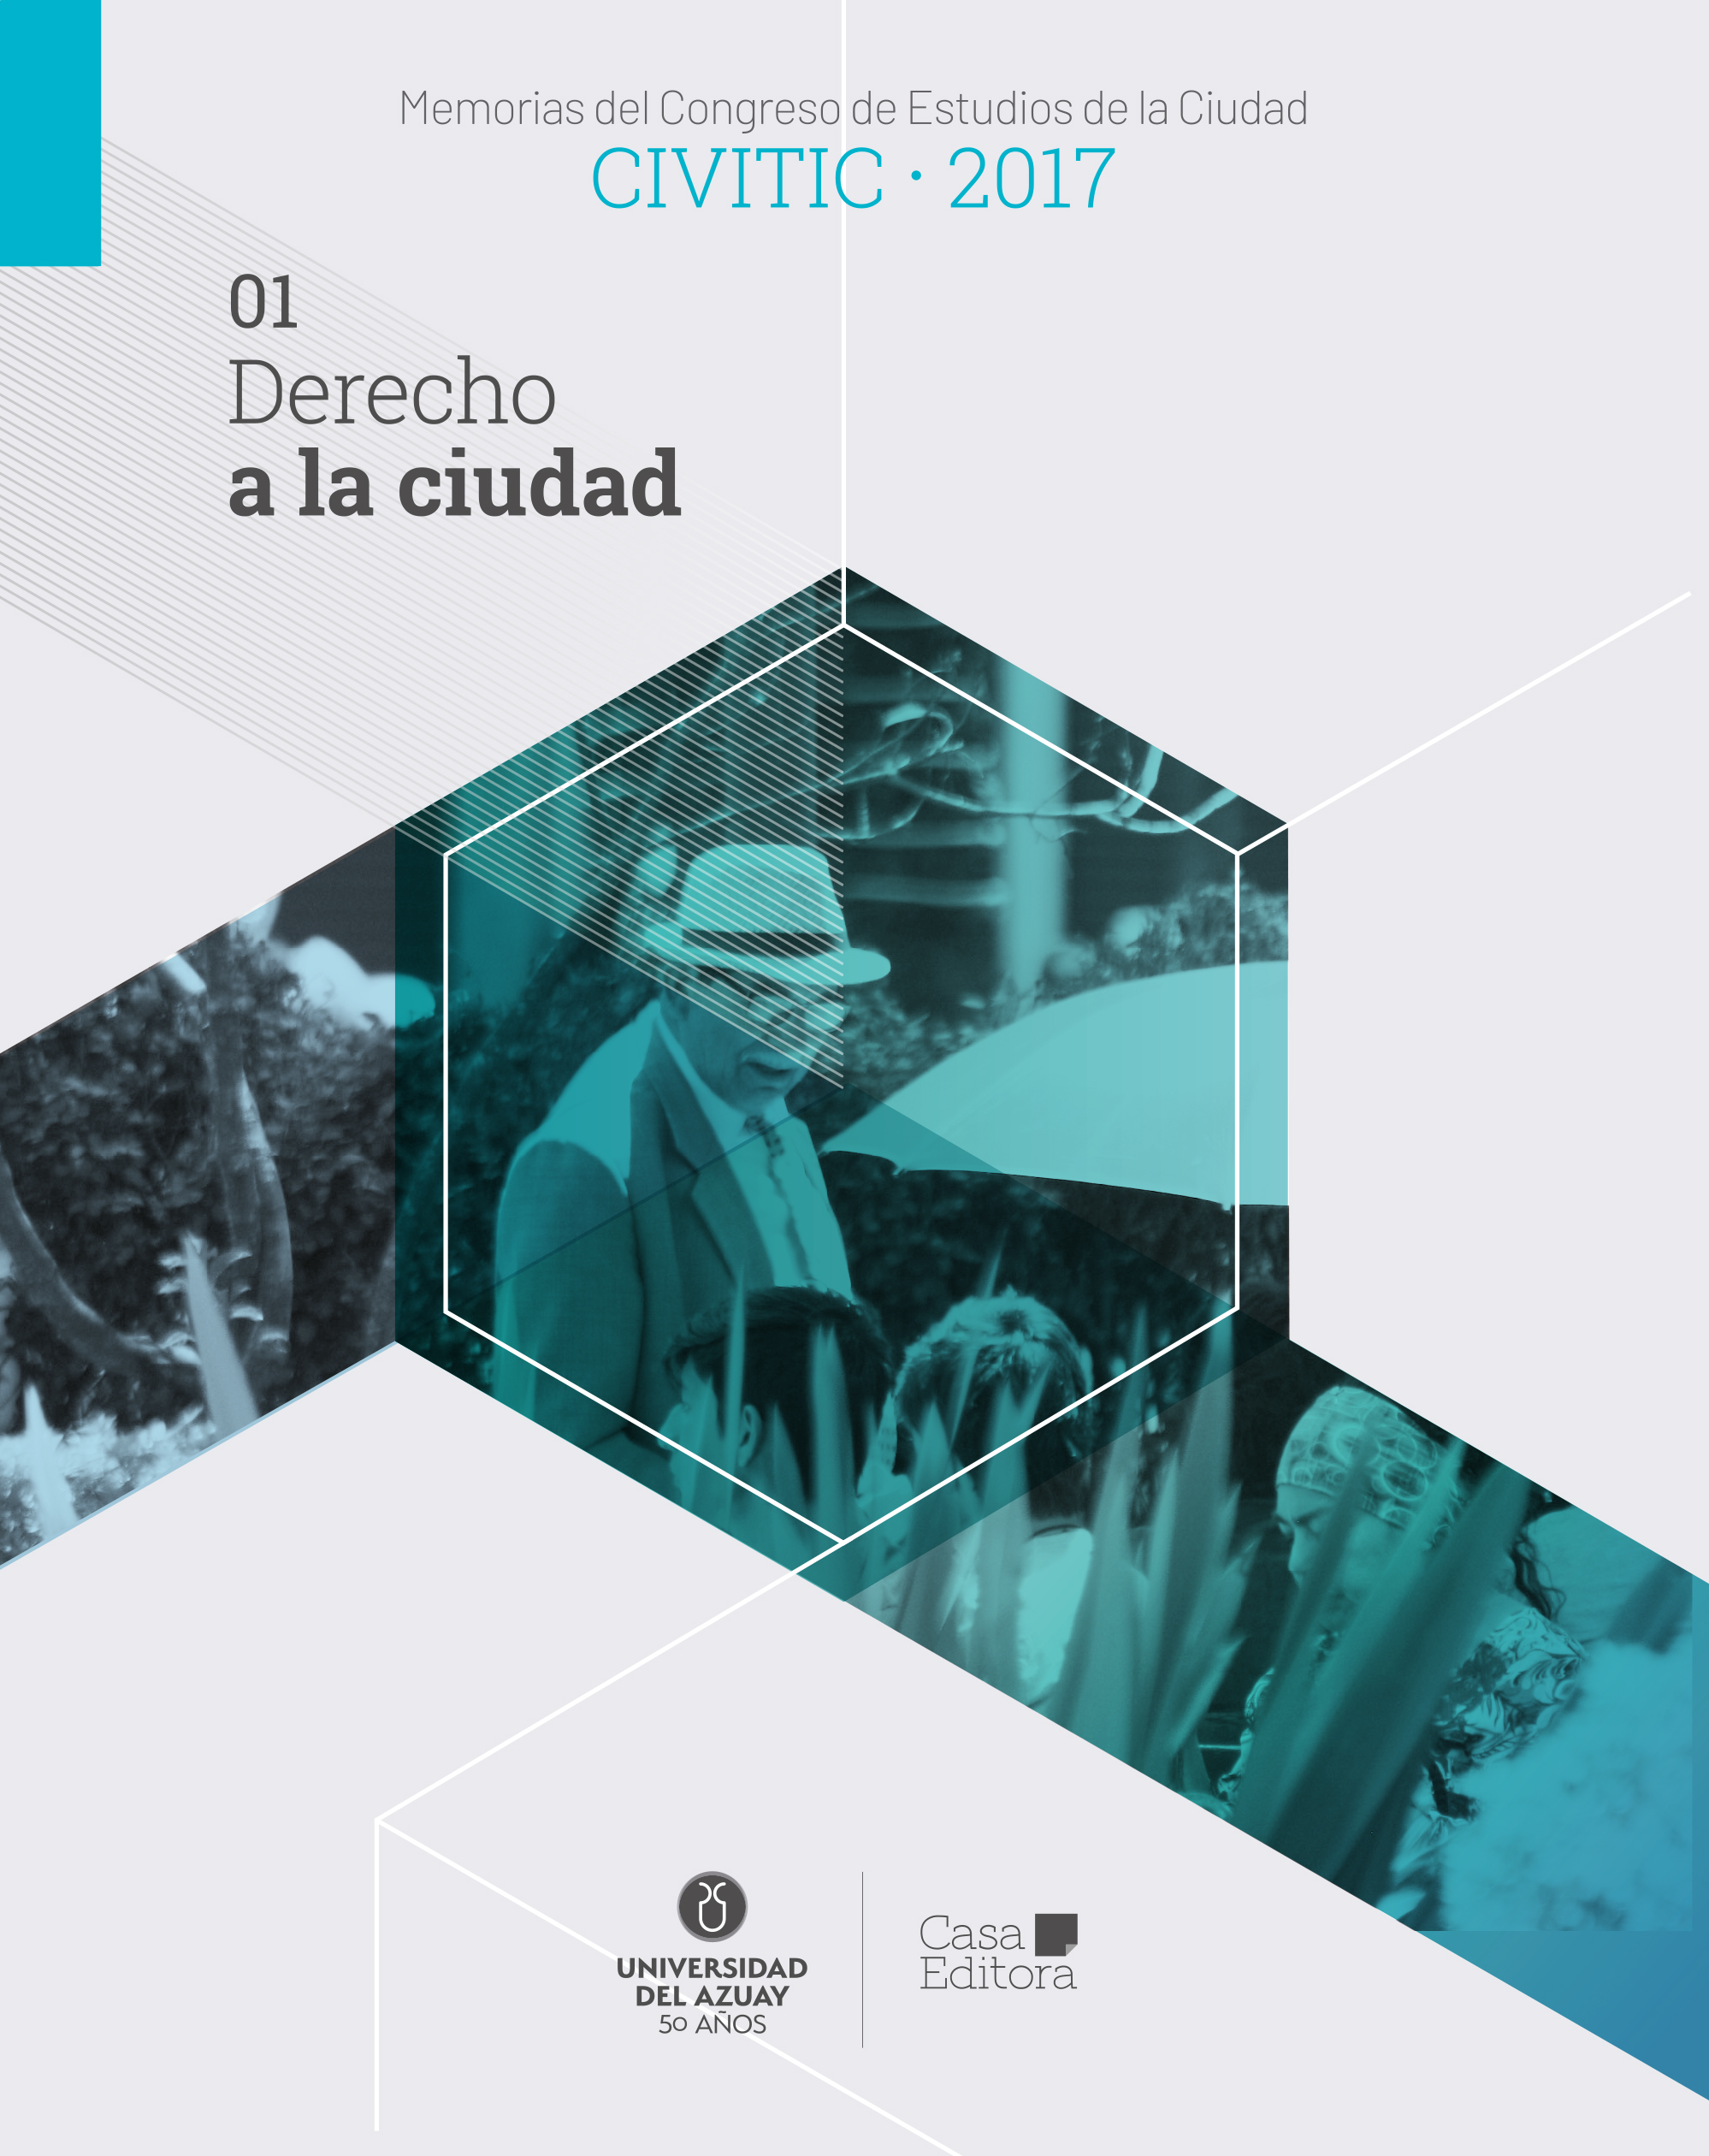 					Visualizar Memorias del Congreso de Estudios de la Ciudad CIVITIC 2017 -  Derecho a la ciudad
				